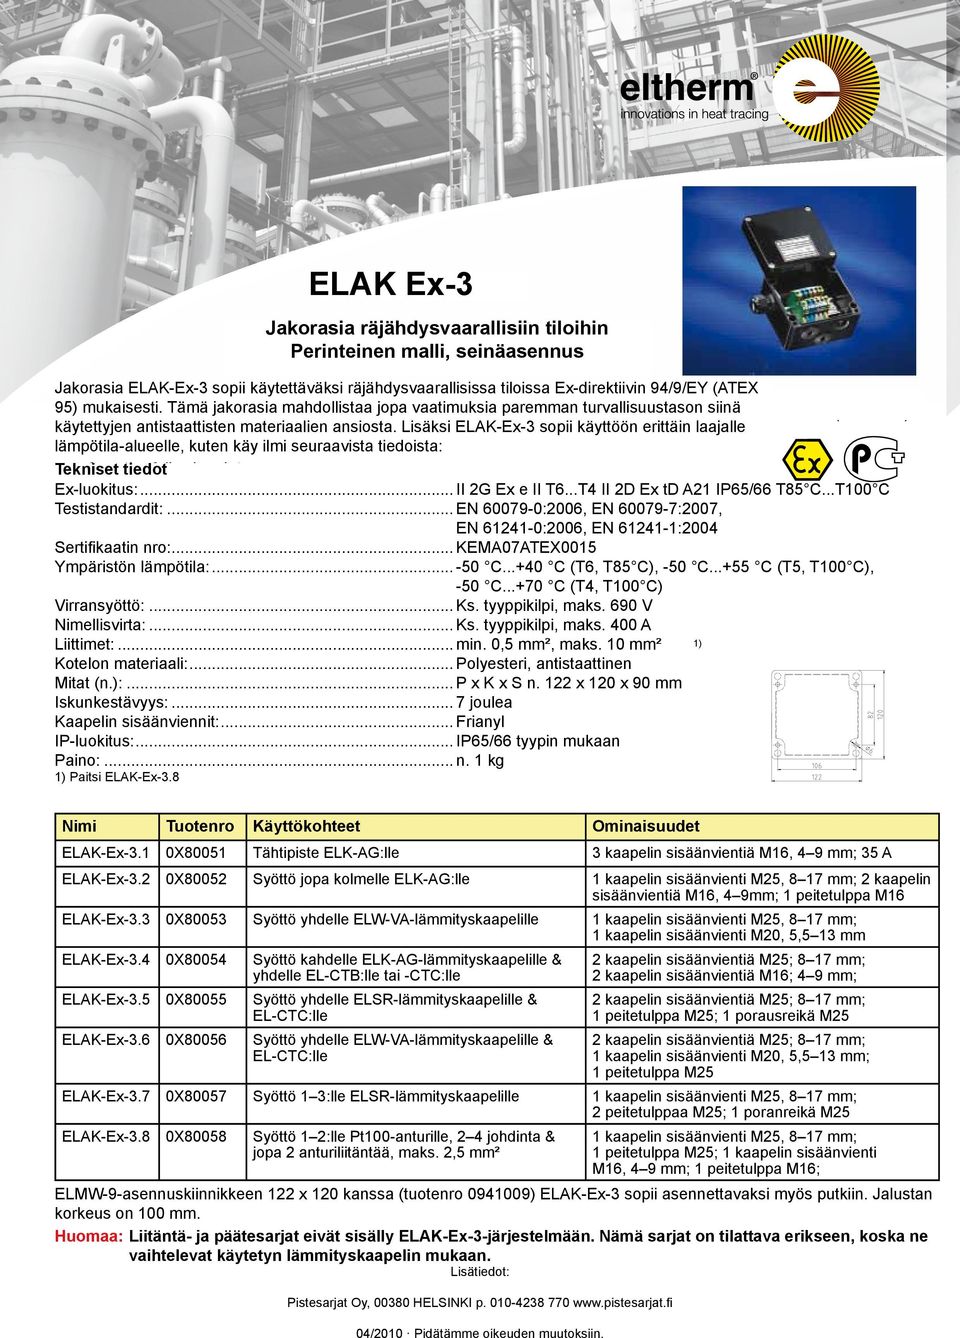 junction box Tämä ELAK-Ex-3 jakorasia is mahdollistaa suitable for use jopa in vaatimuksia hazardous areas paremman according turvallisuustason to the Ex guidelines siinä 94/9/EG (ATEX 95).